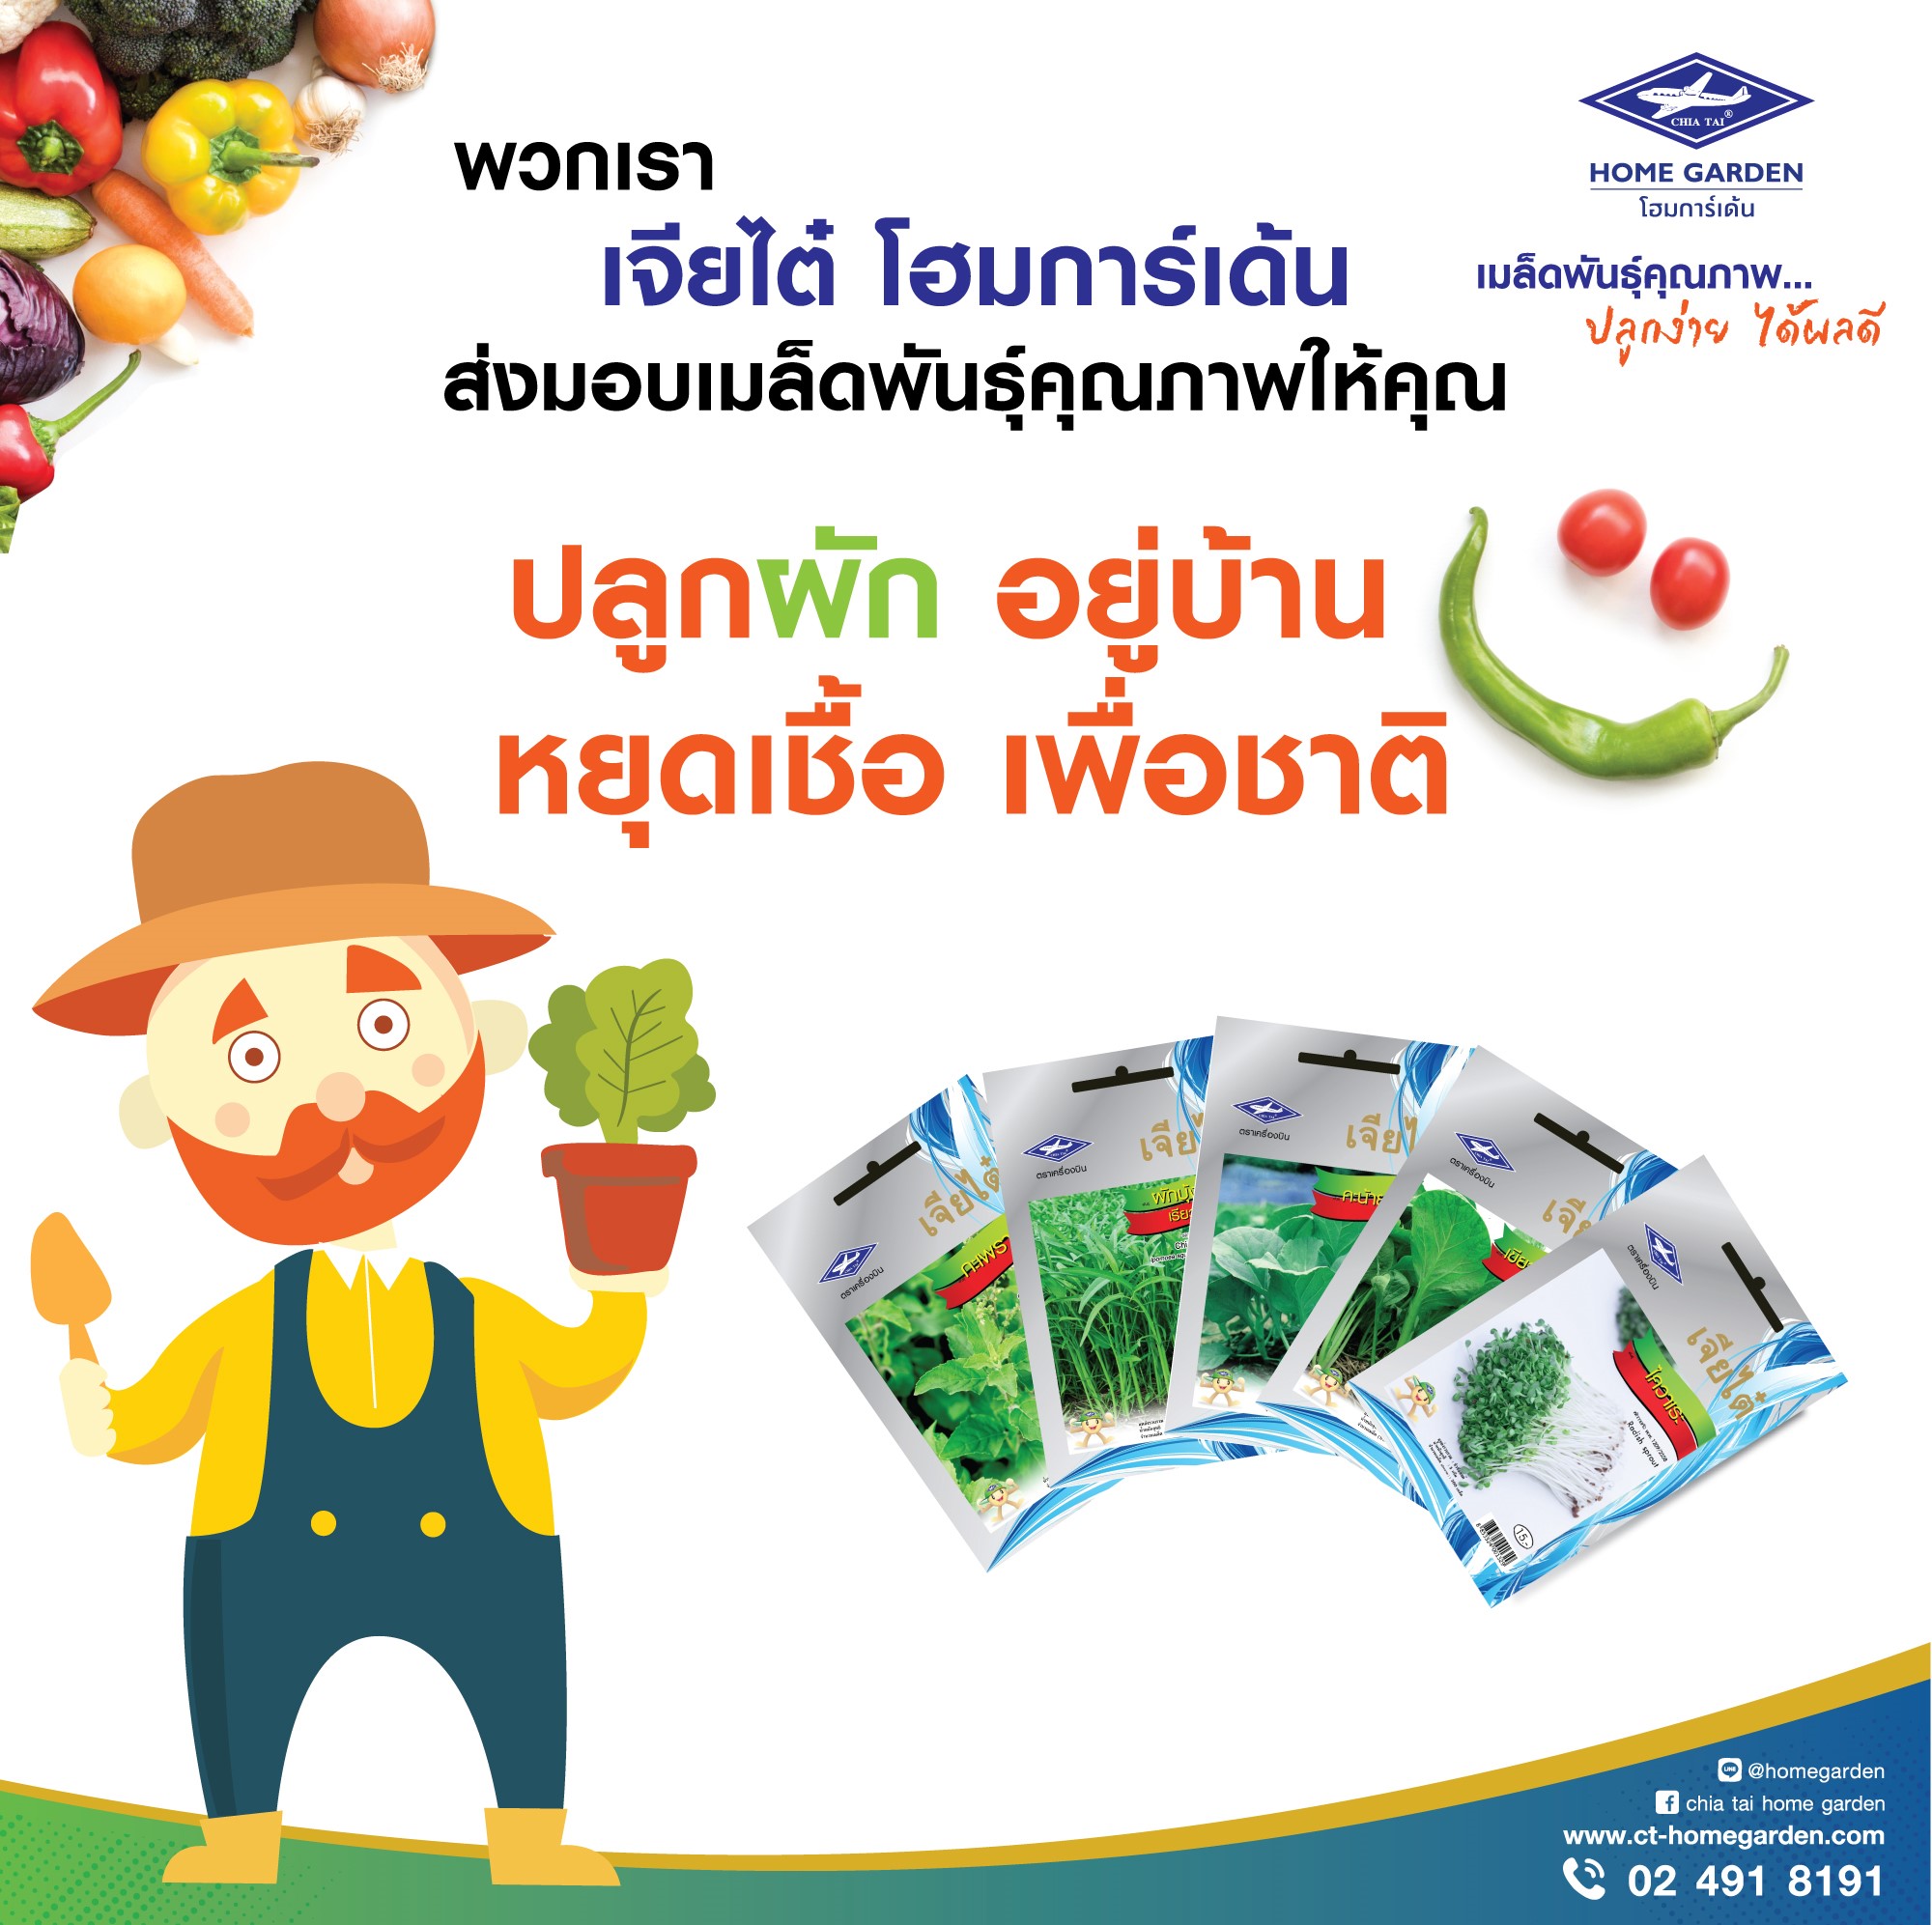 เจียไต๋แจกฟรี! เมล็ดพันธุ์ผักสวนครัว 25,000 ซอง ส่งเสริมคนไทย ปลูกผัก อยู่บ้าน หยุดเชื้อ เพื่อชาติ